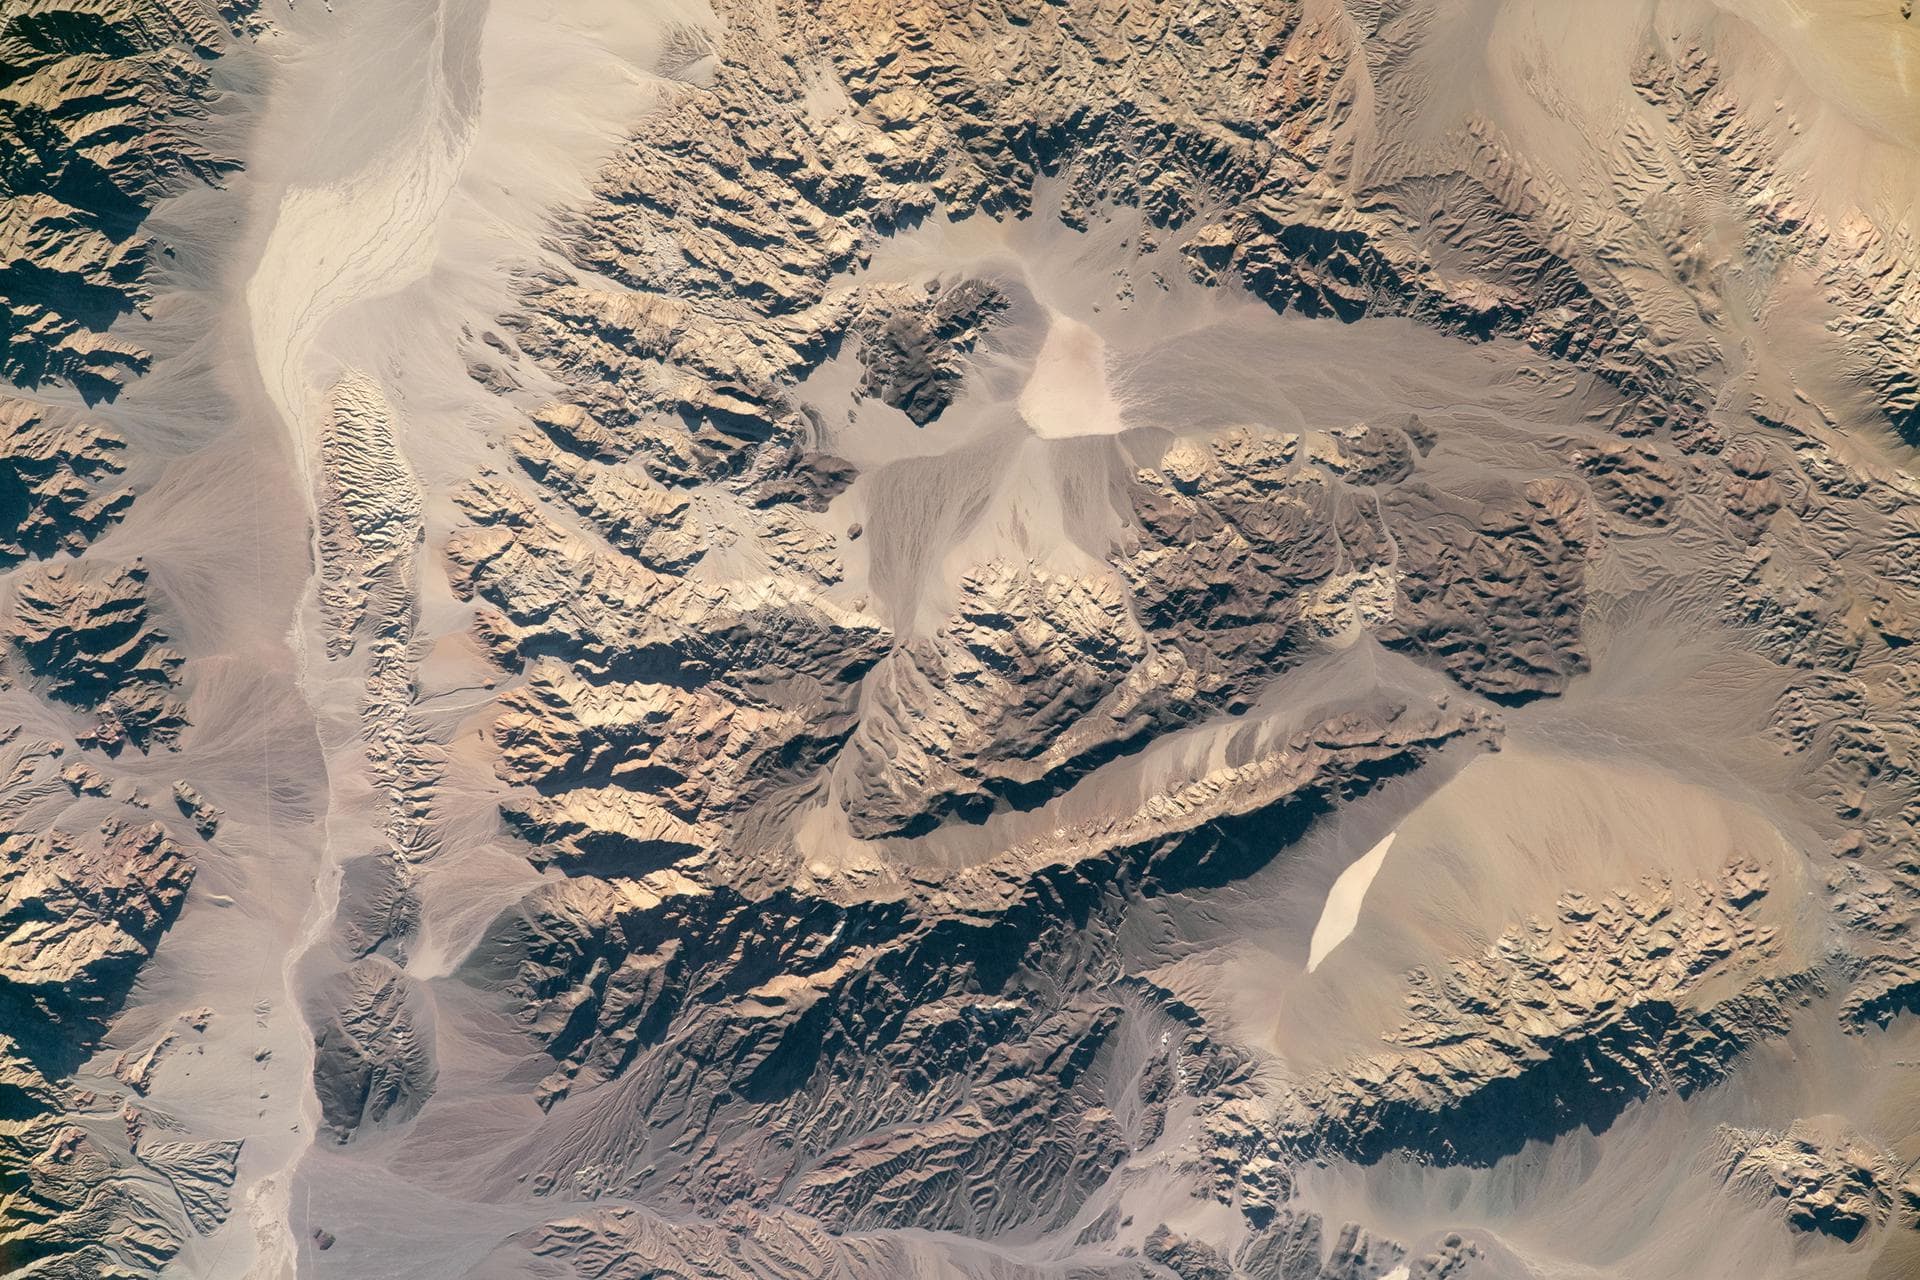 Гималаи снимок из космоса